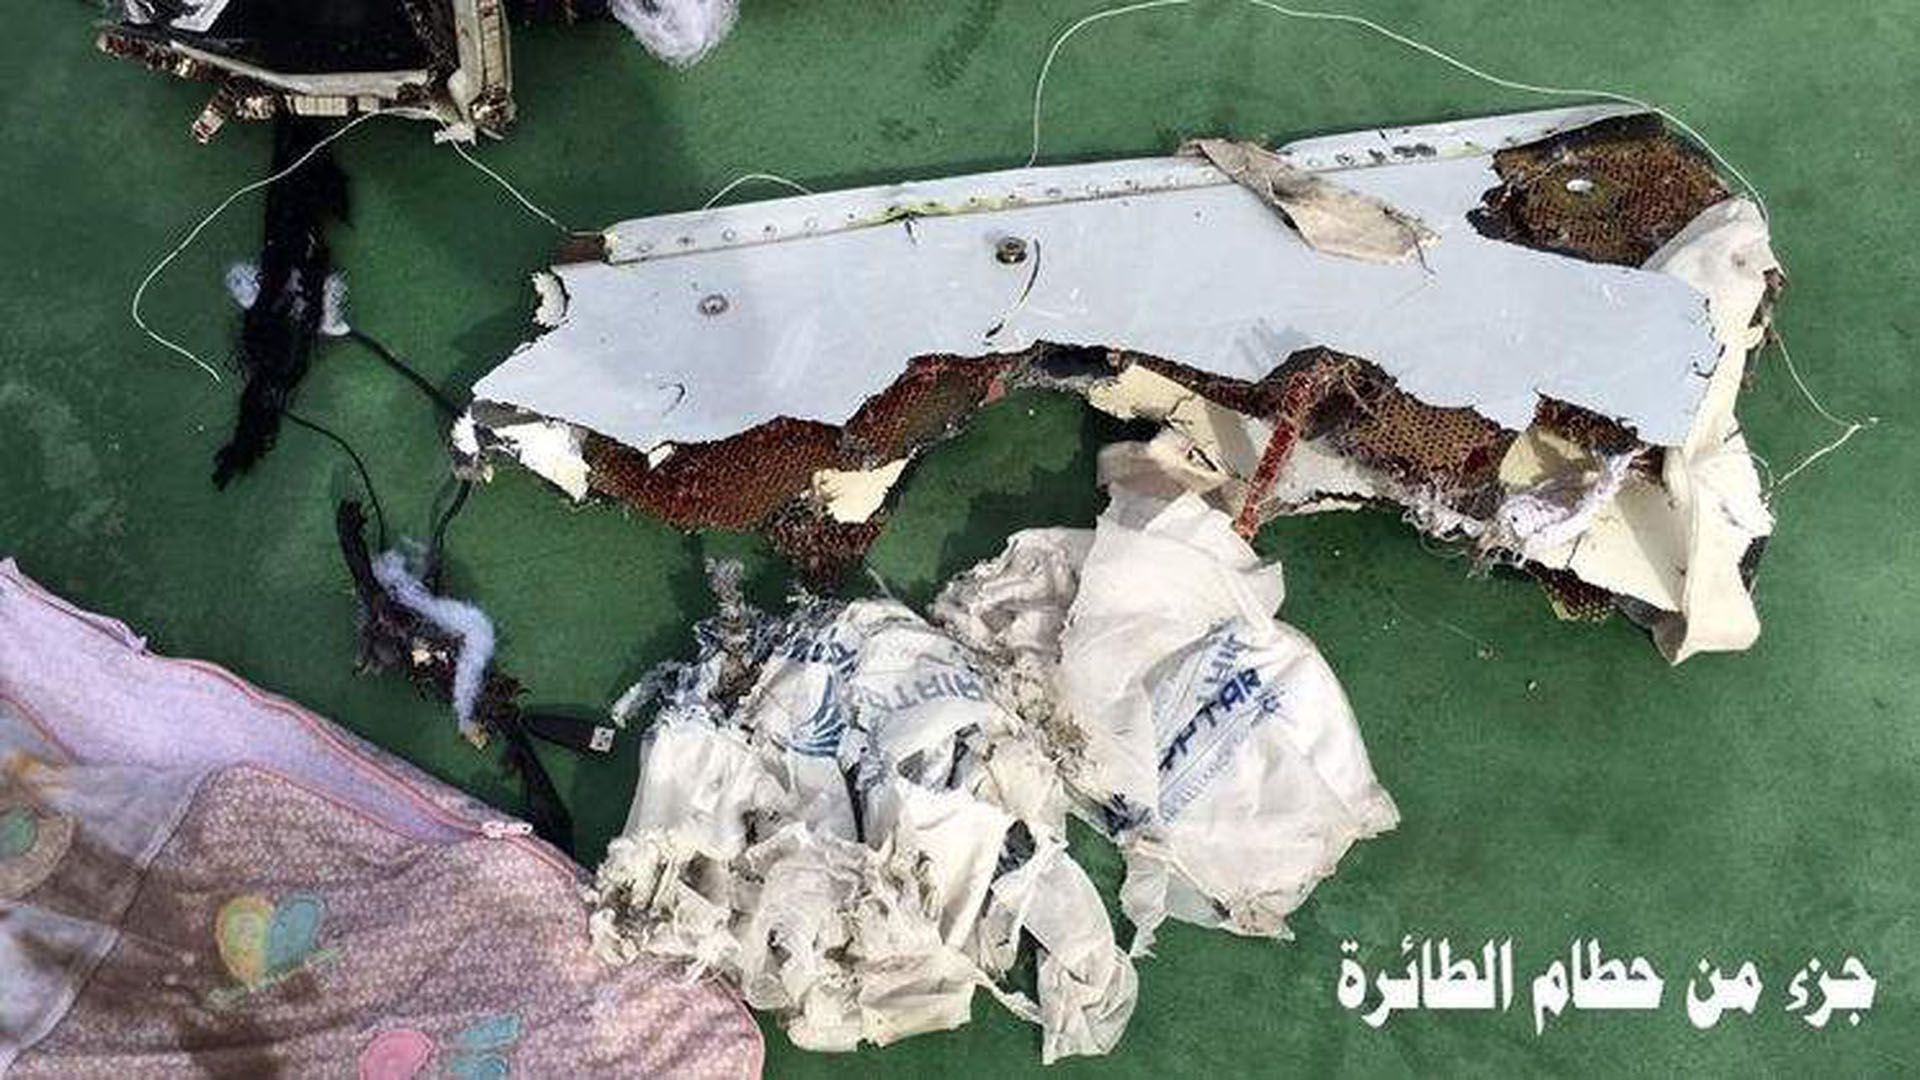 Inicialmente las autoridades egipcias dijeron haber encontrado restos de explosivos en los restos del avión. (Egyptian Armed Forces Facebook via AP)